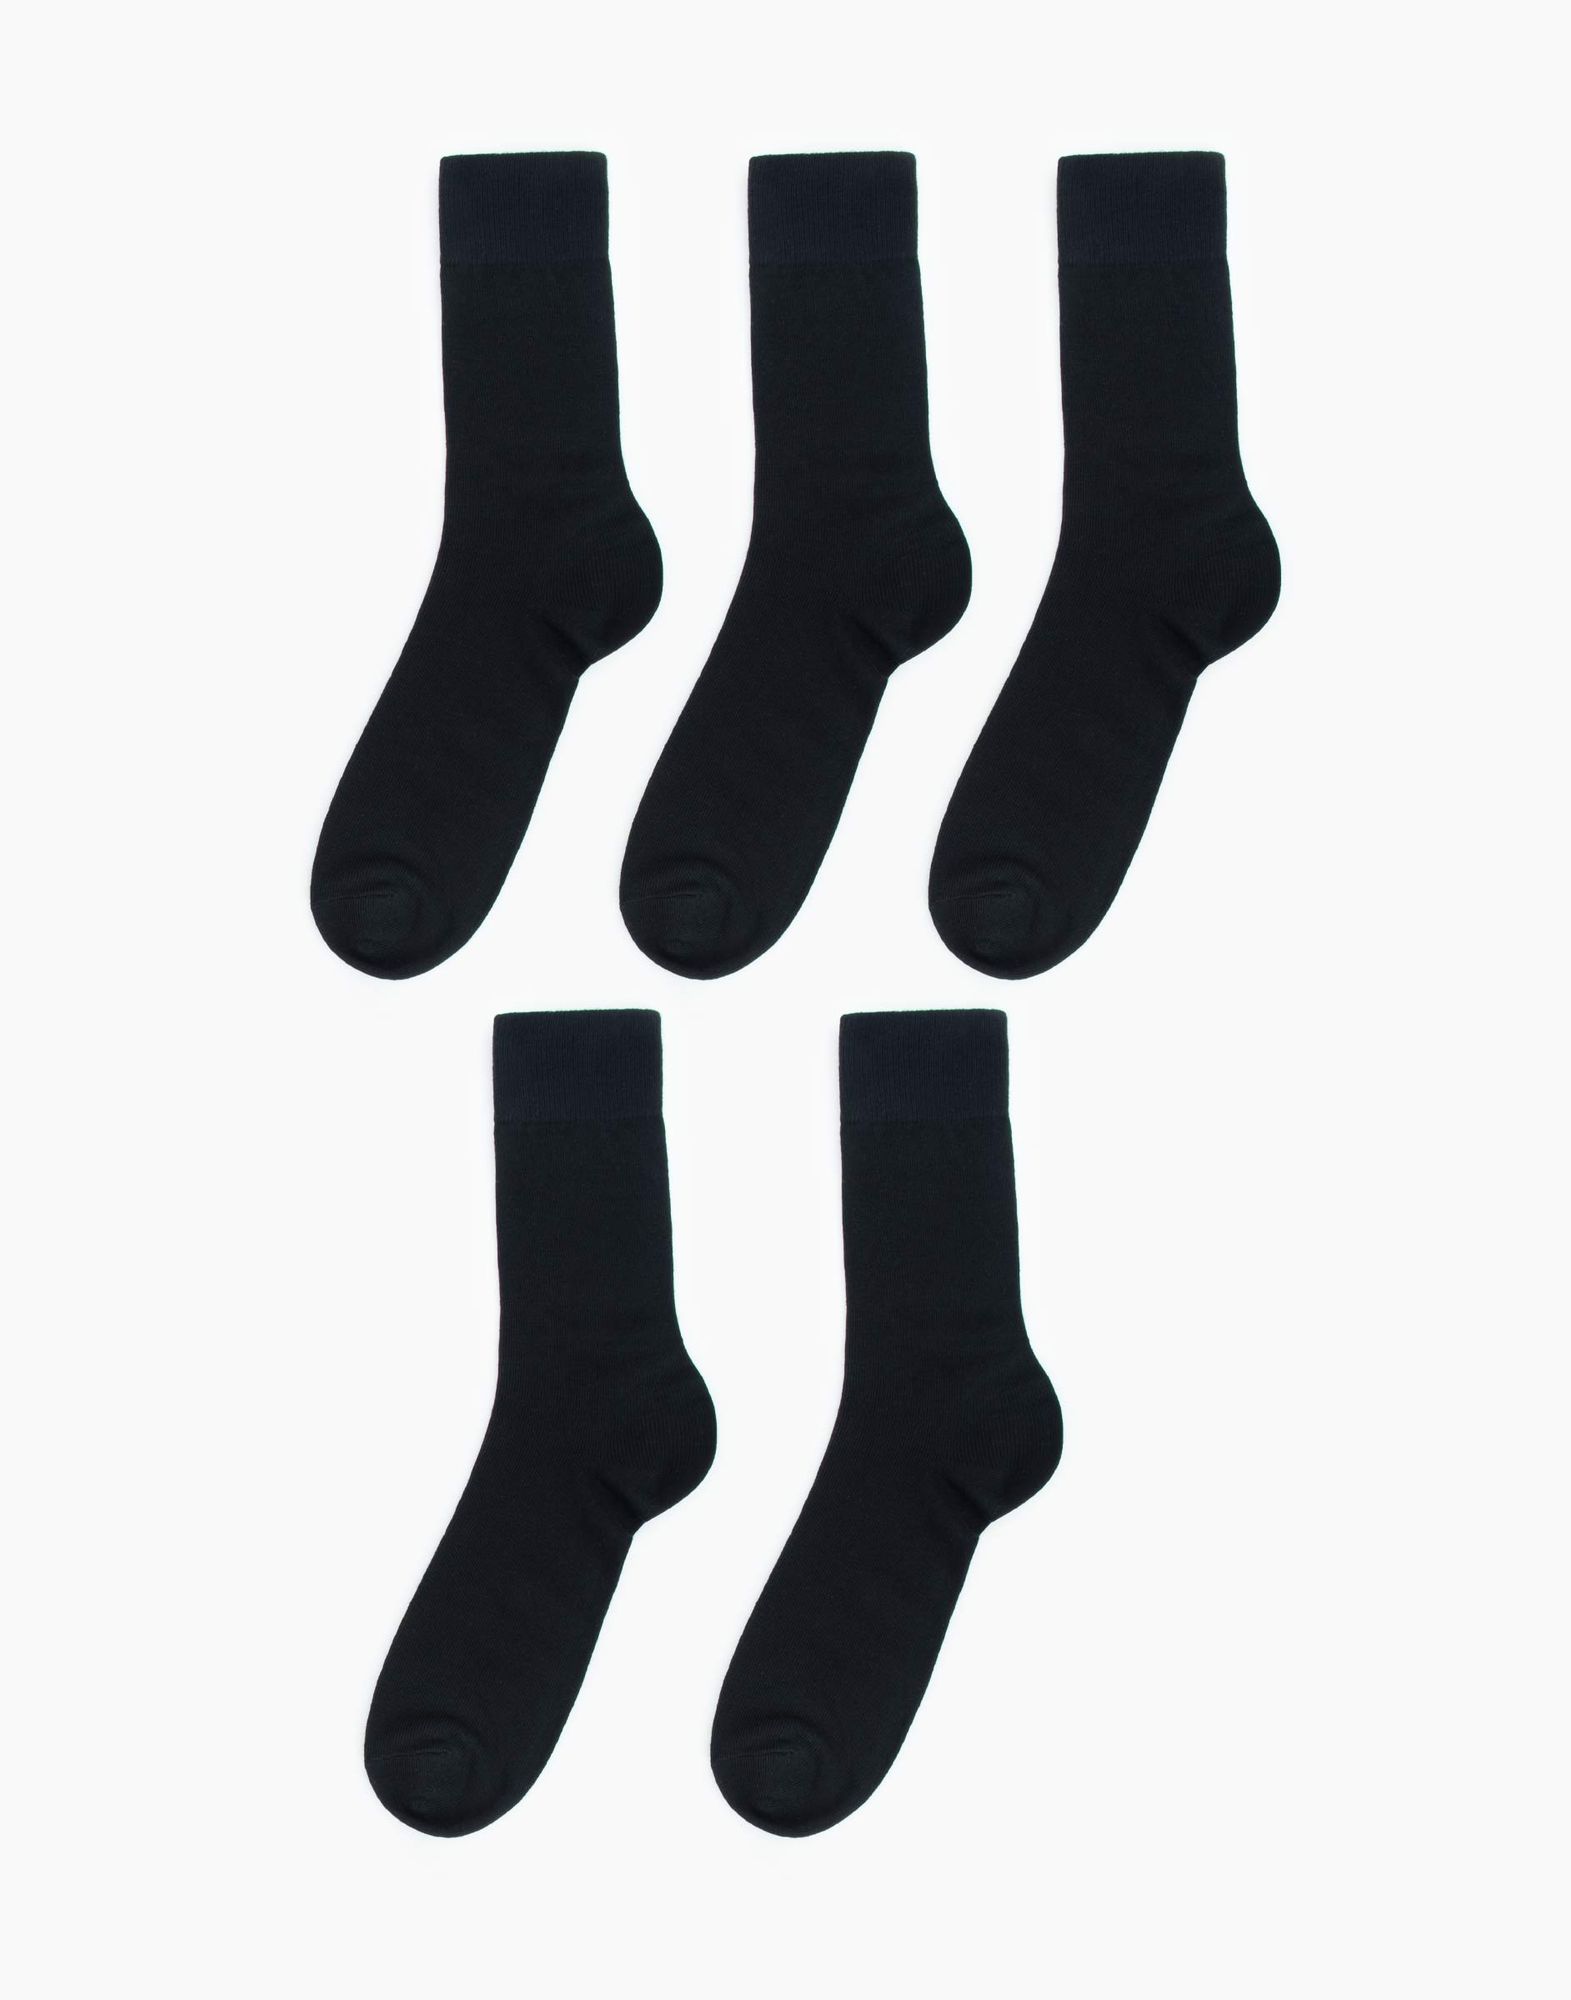 Чёрные носки 5 пар -1